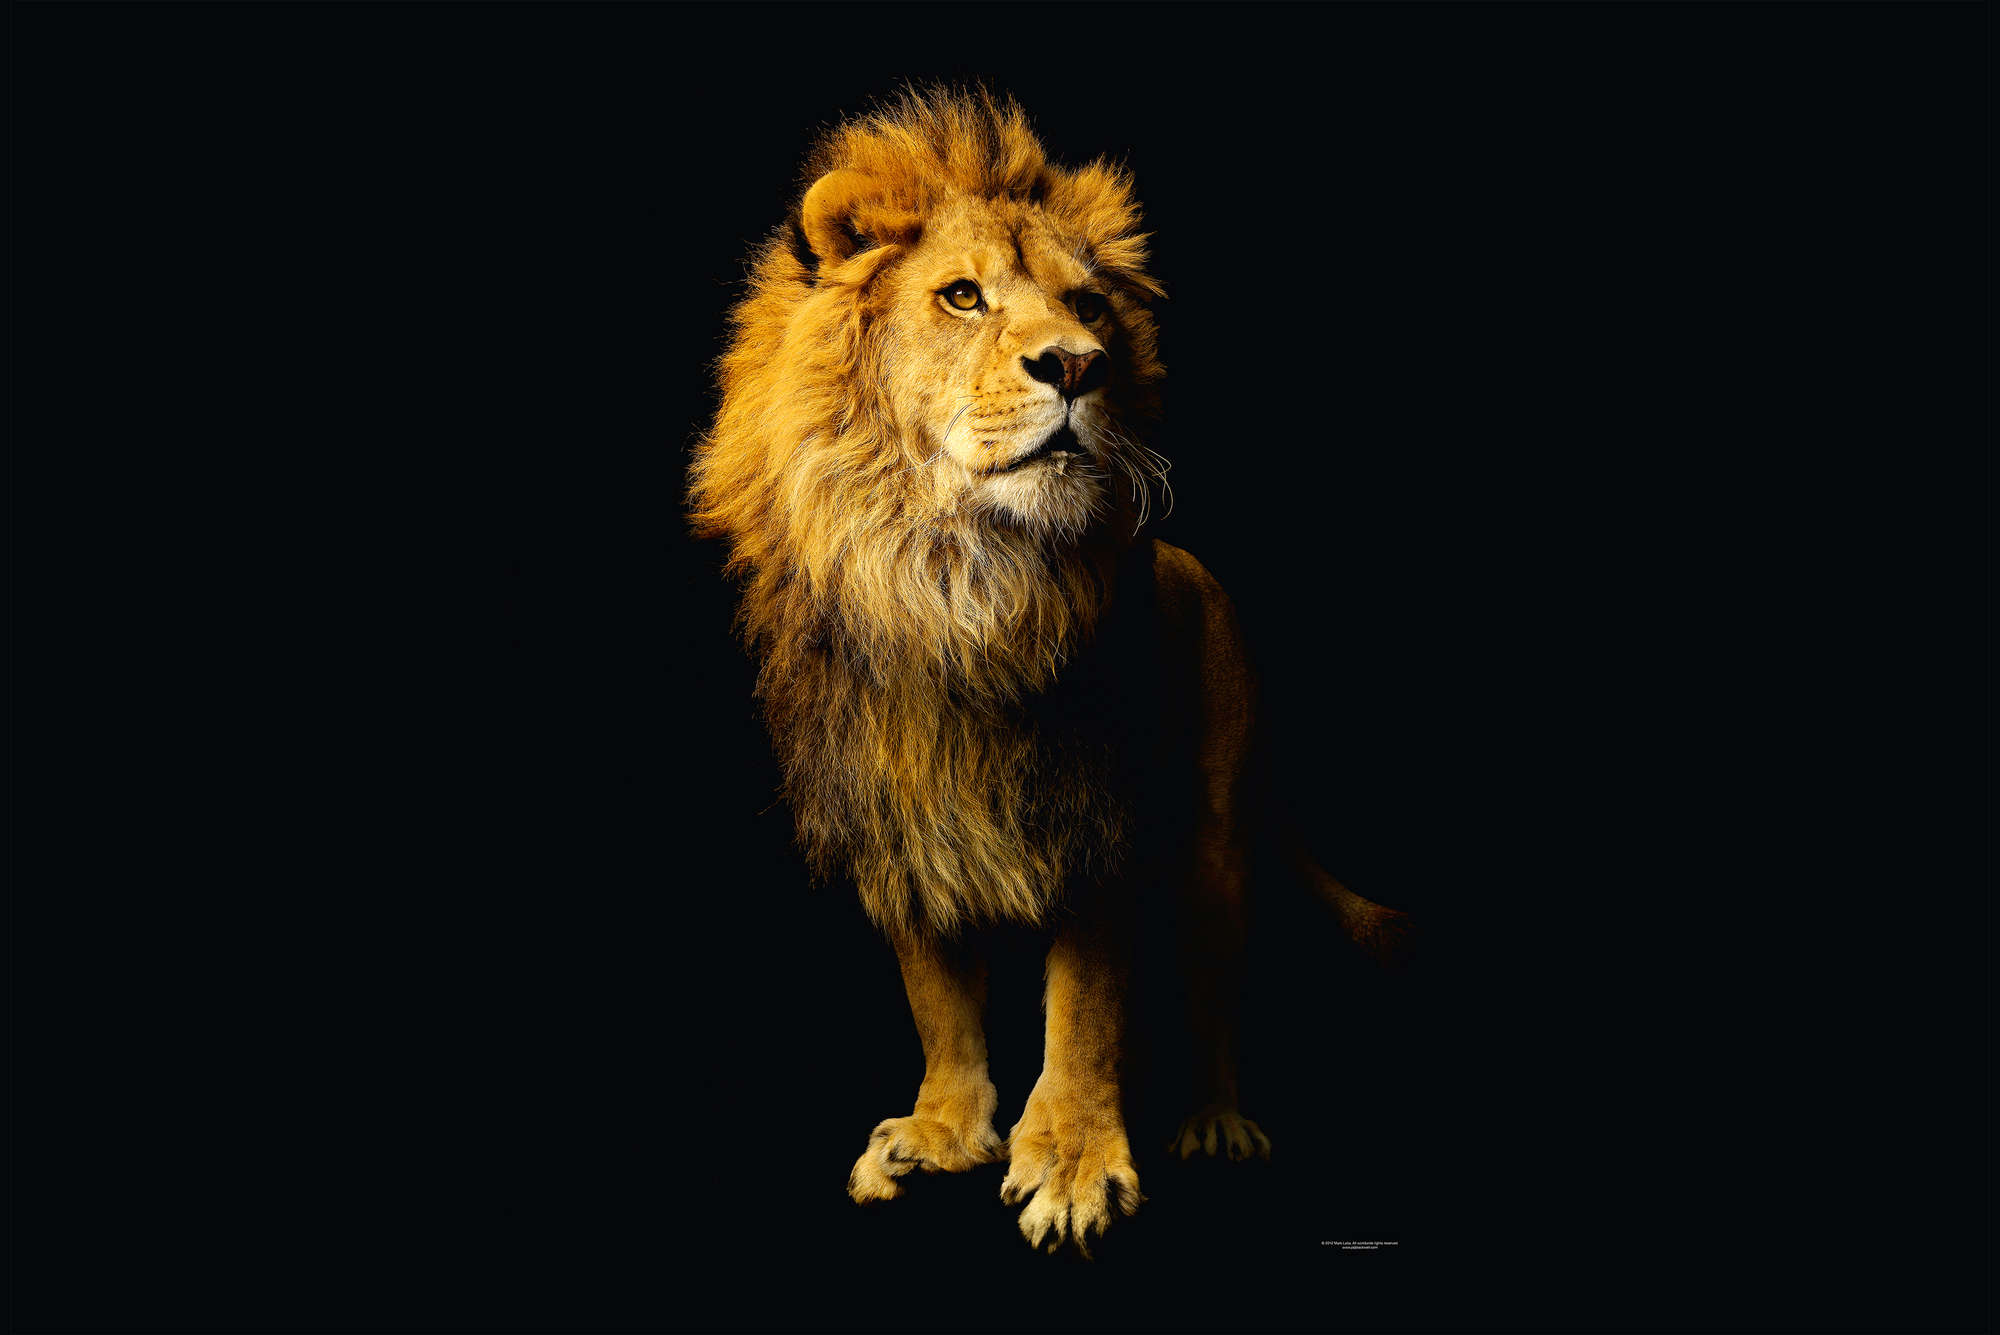             Lion - animal portrait mural
        